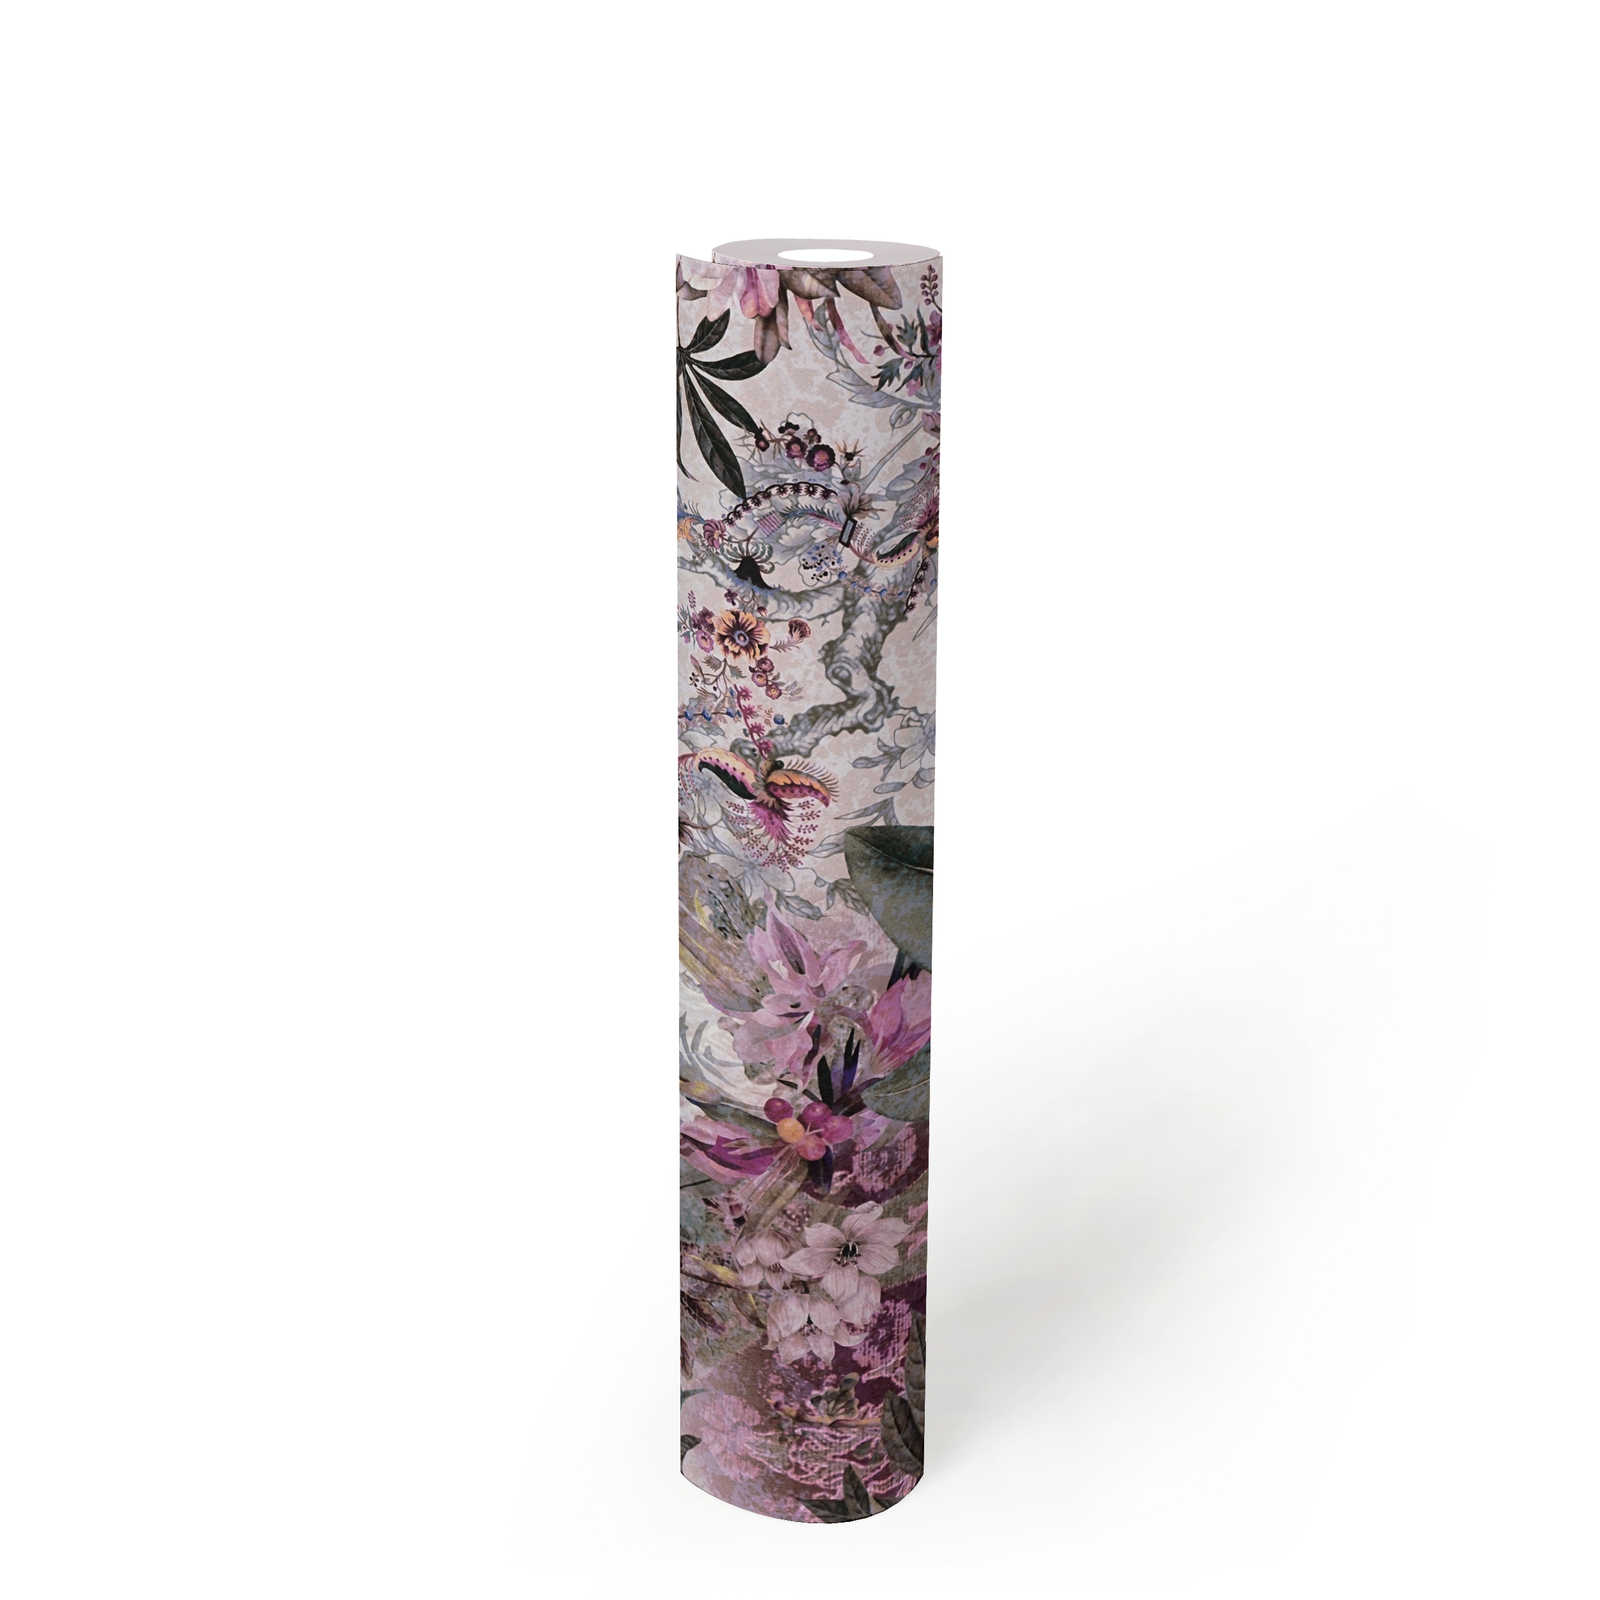             Motivtapete Blumen Design mit Blütenmuster – Bunt
        